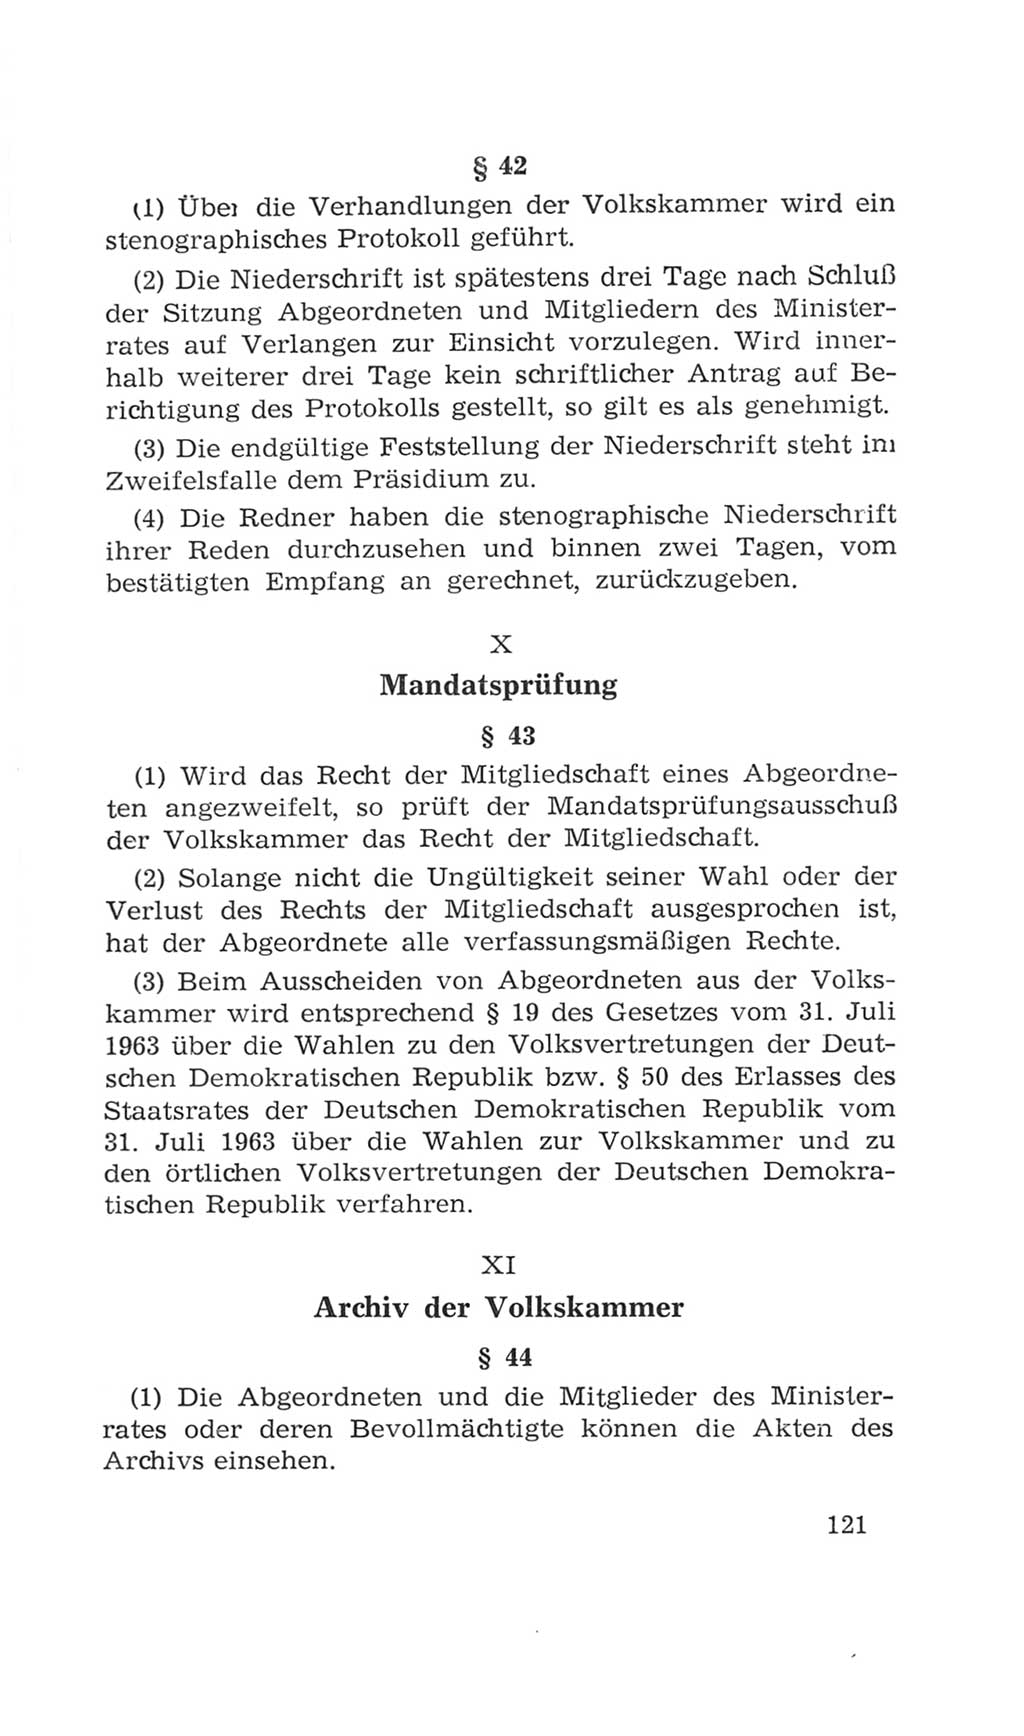 Volkskammer (VK) der Deutschen Demokratischen Republik (DDR), 4. Wahlperiode 1963-1967, Seite 121 (VK. DDR 4. WP. 1963-1967, S. 121)